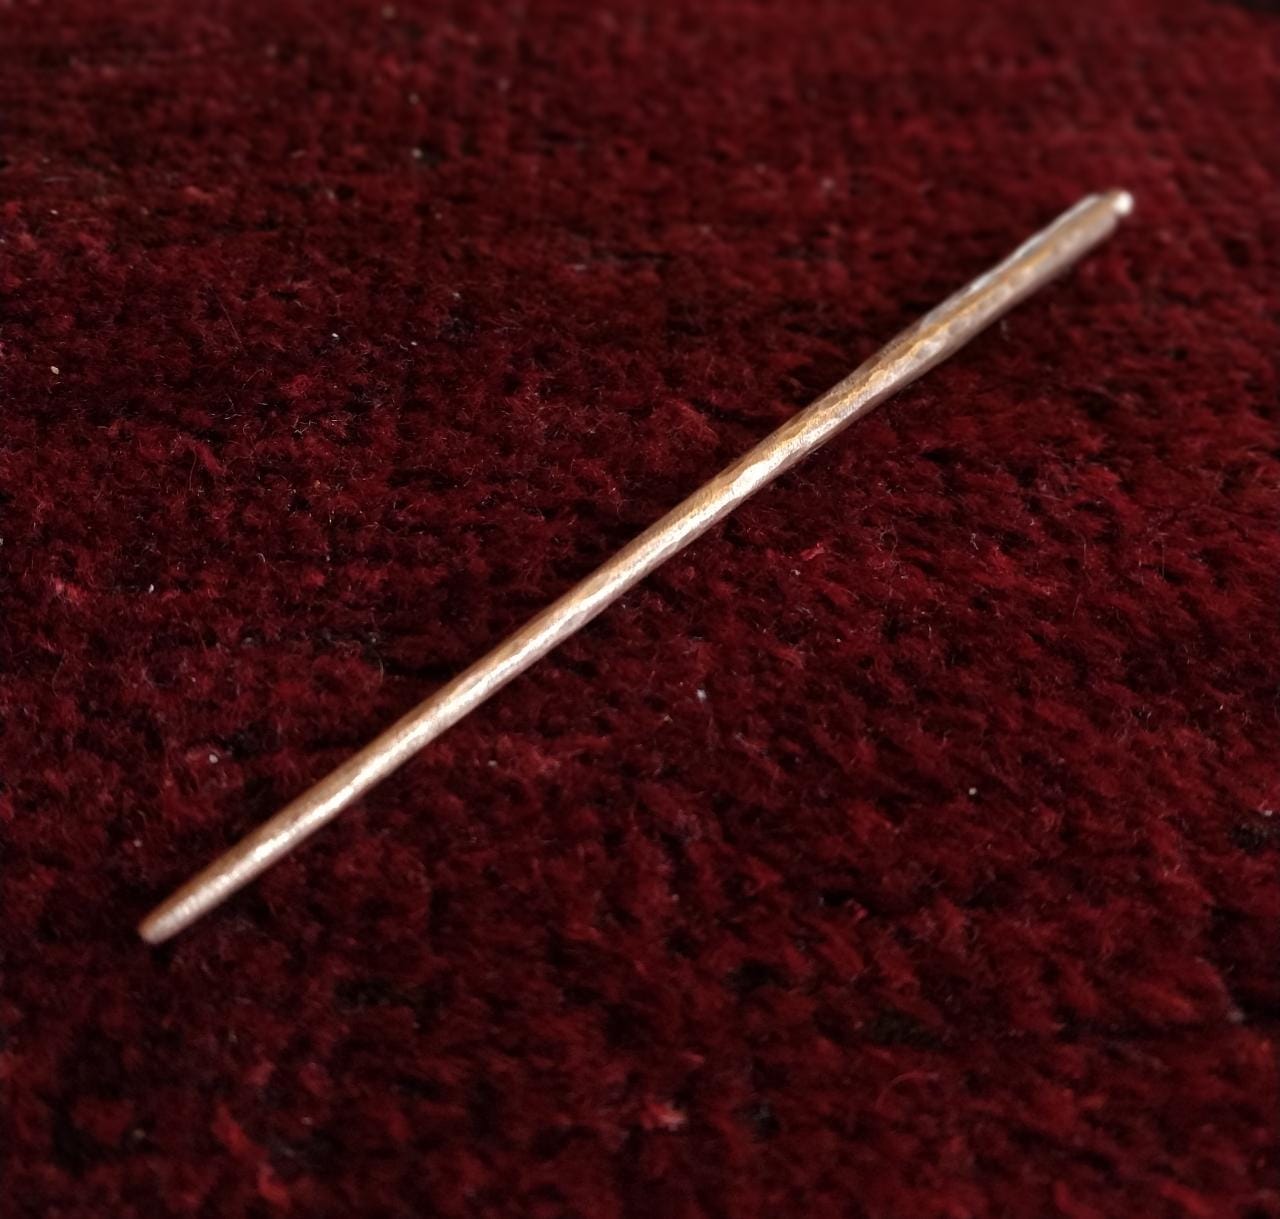 Copper Hair Pin